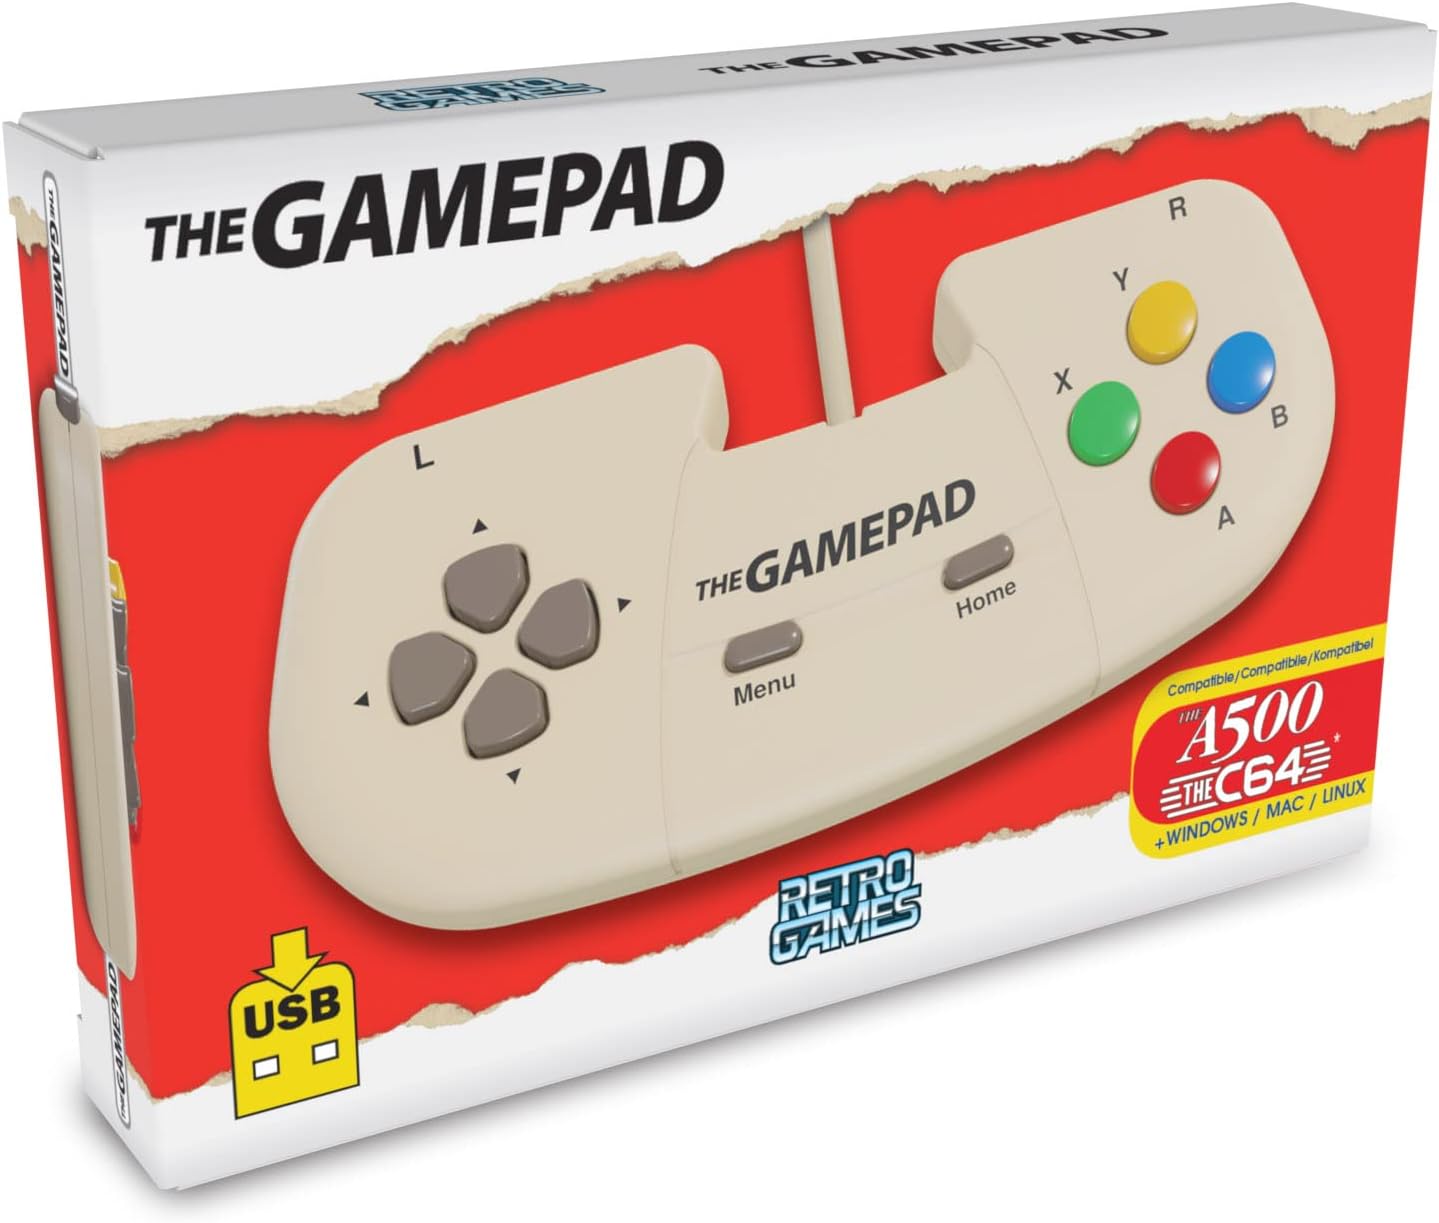 The A500 Gamepad (Cream)